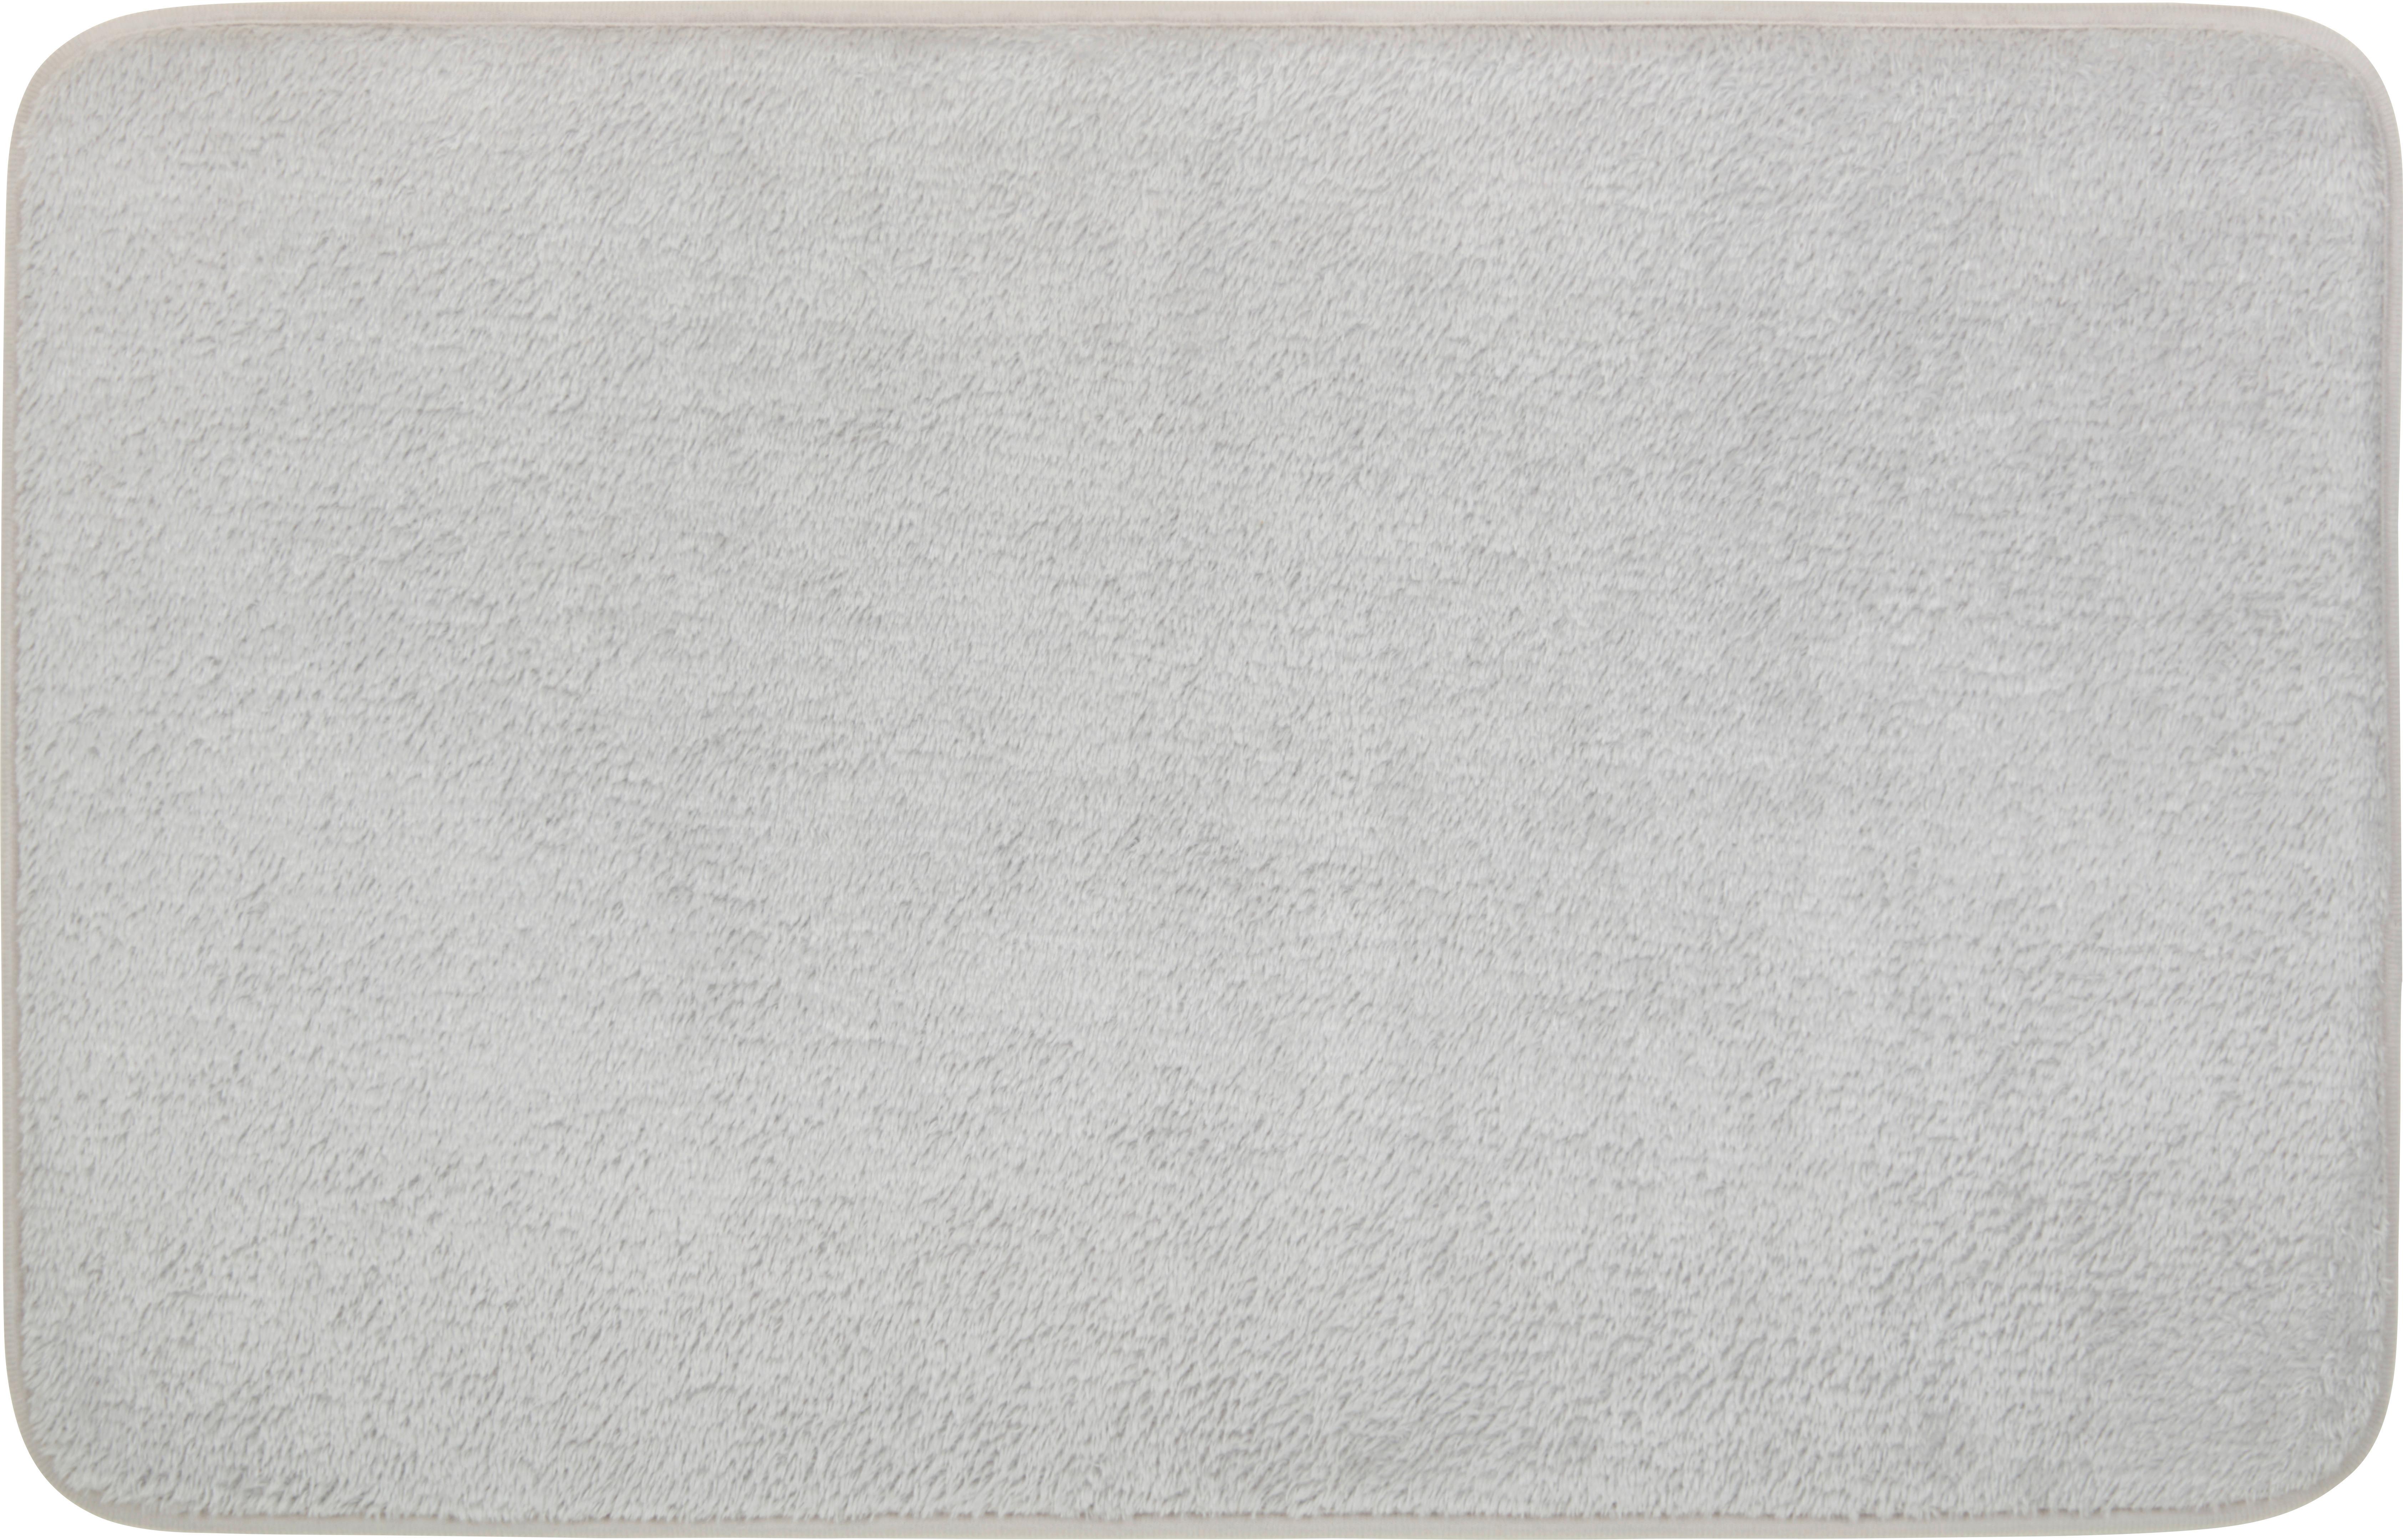 Badematte Lisa Silber 45x70 cm Rutschhemmend - Silberfarben, KONVENTIONELL, Textil (45/70cm) - Ondega